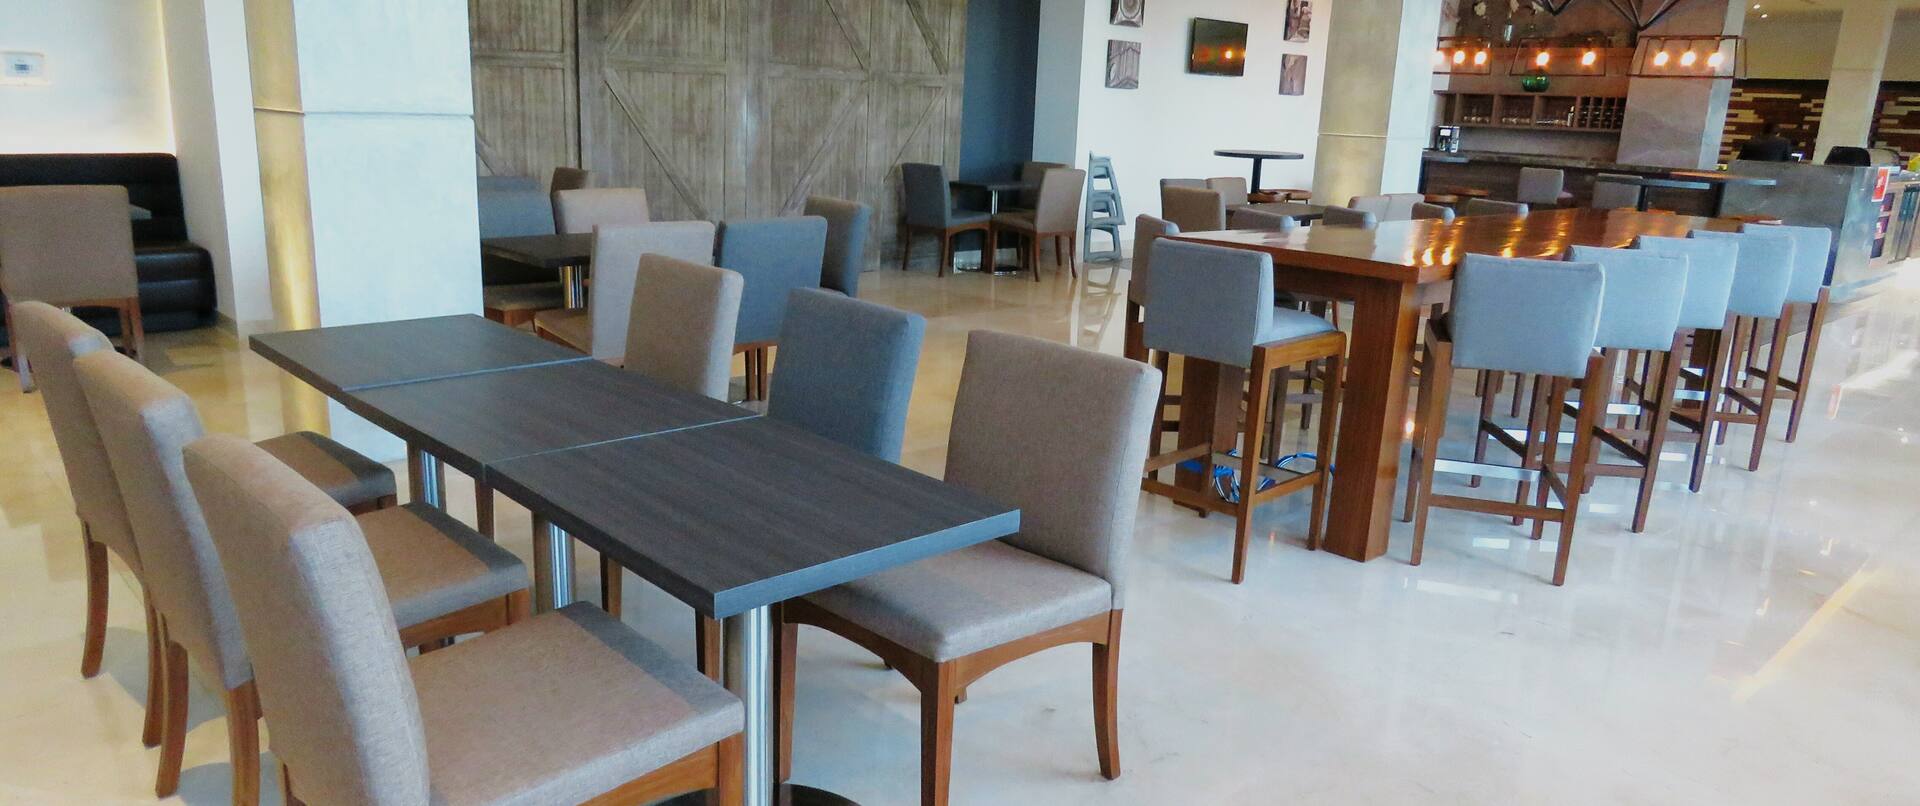 Área de comedor para desayuno con mesas y sillas